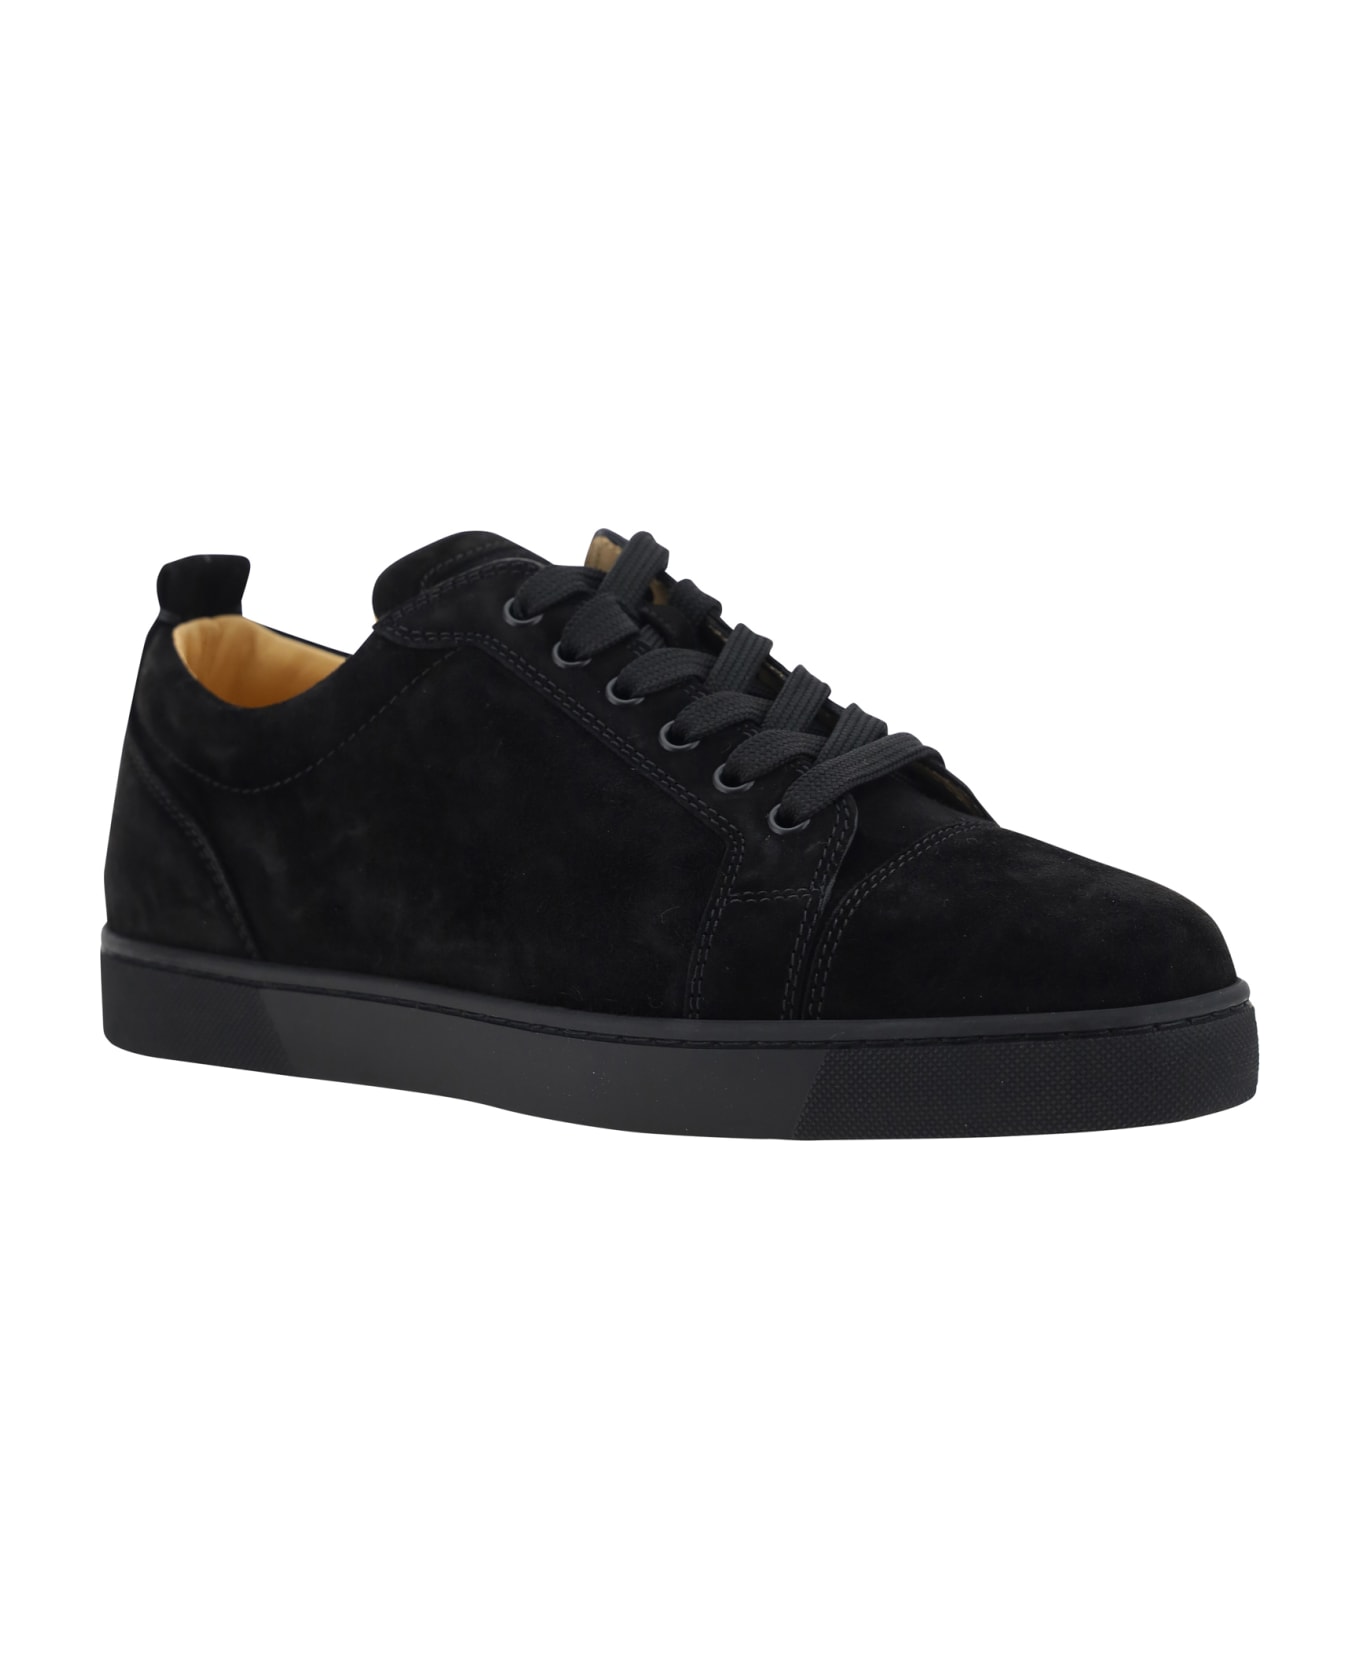 Christian Louboutin Louis Junior Sneakers - Black/bk